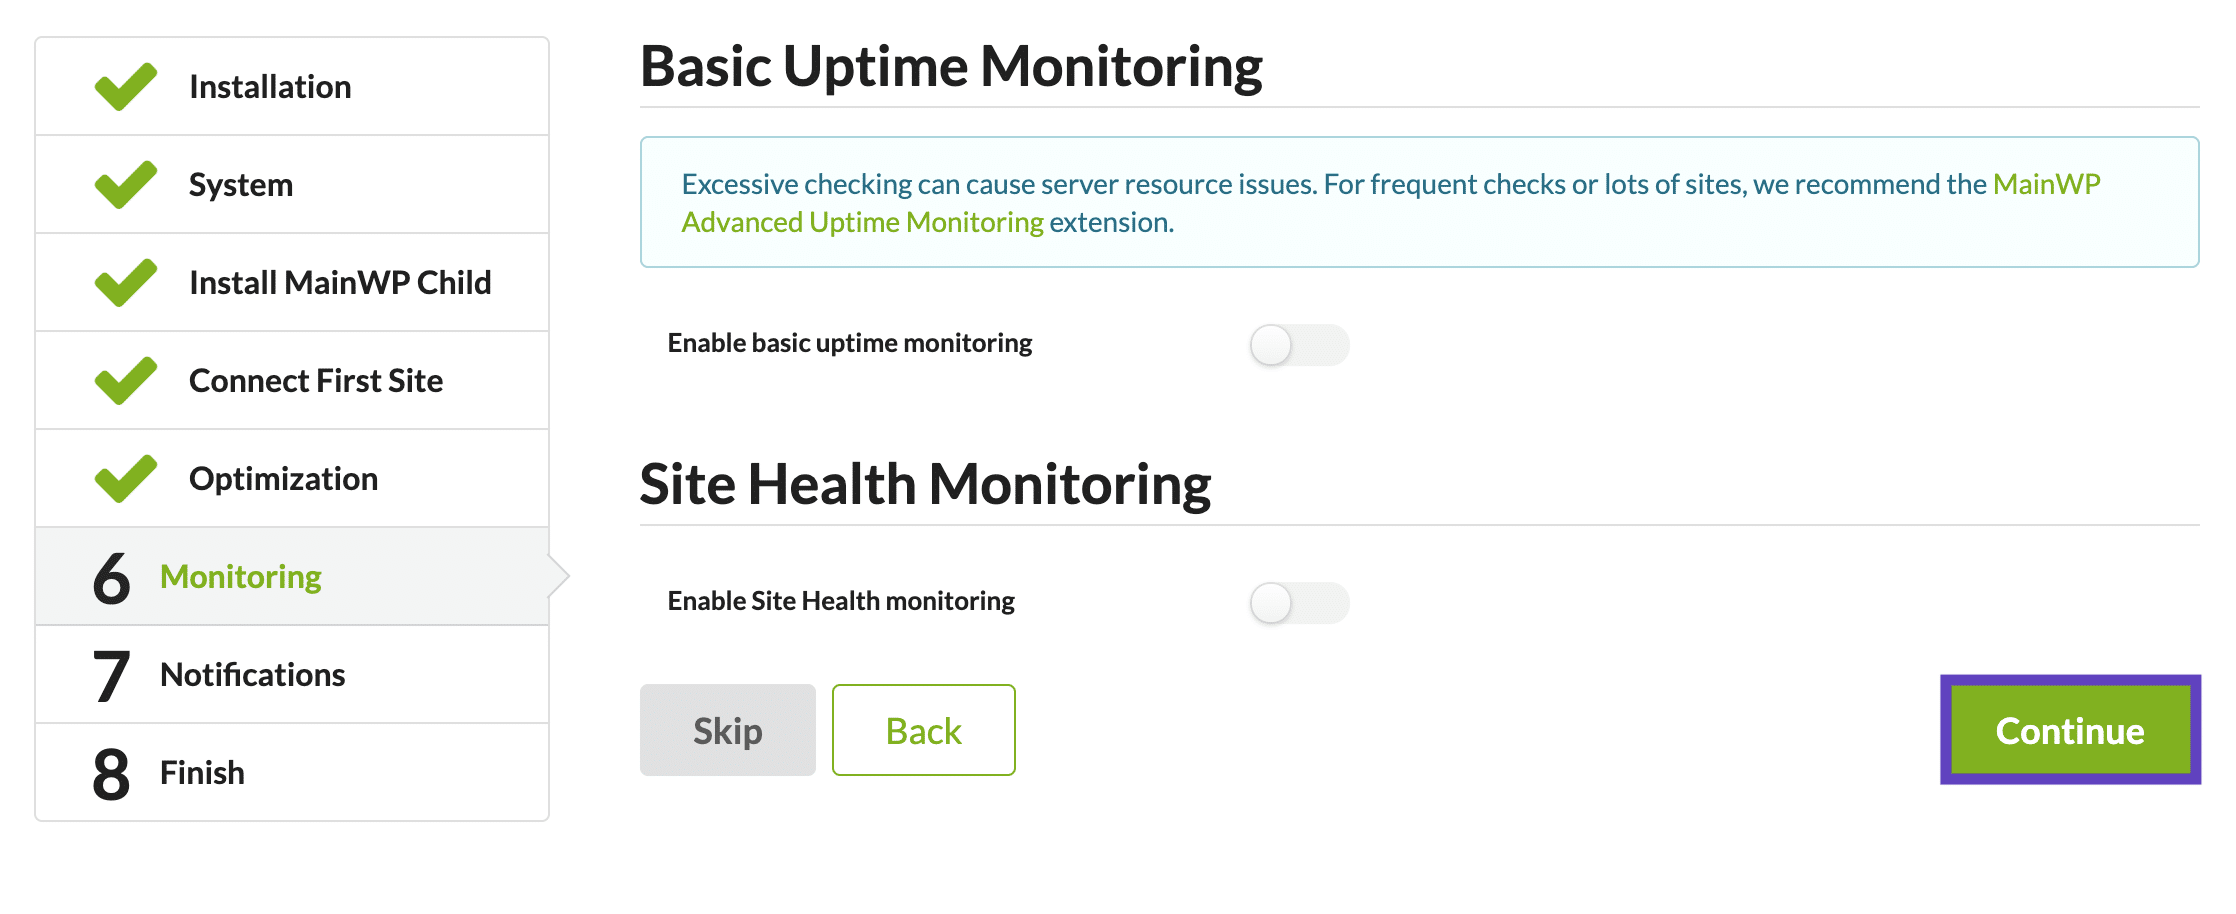 Basic Uptime Monitoring